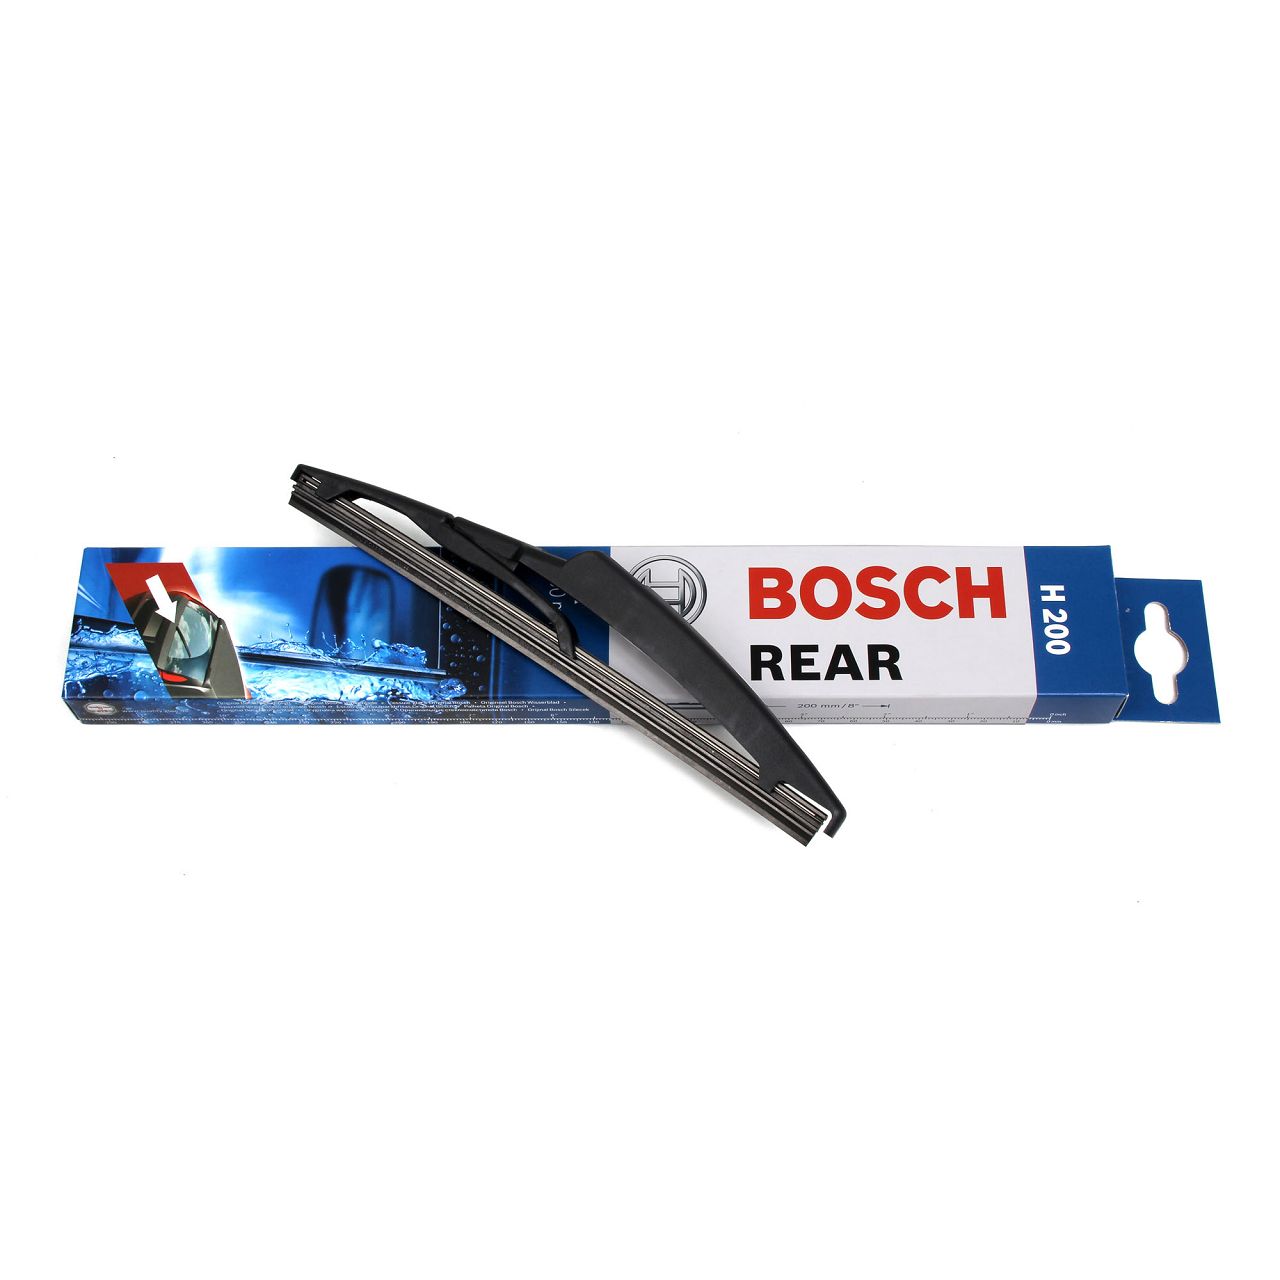 BOSCH Scheibenwischer Heckwischer Wischerblatt REAR H200 200mm